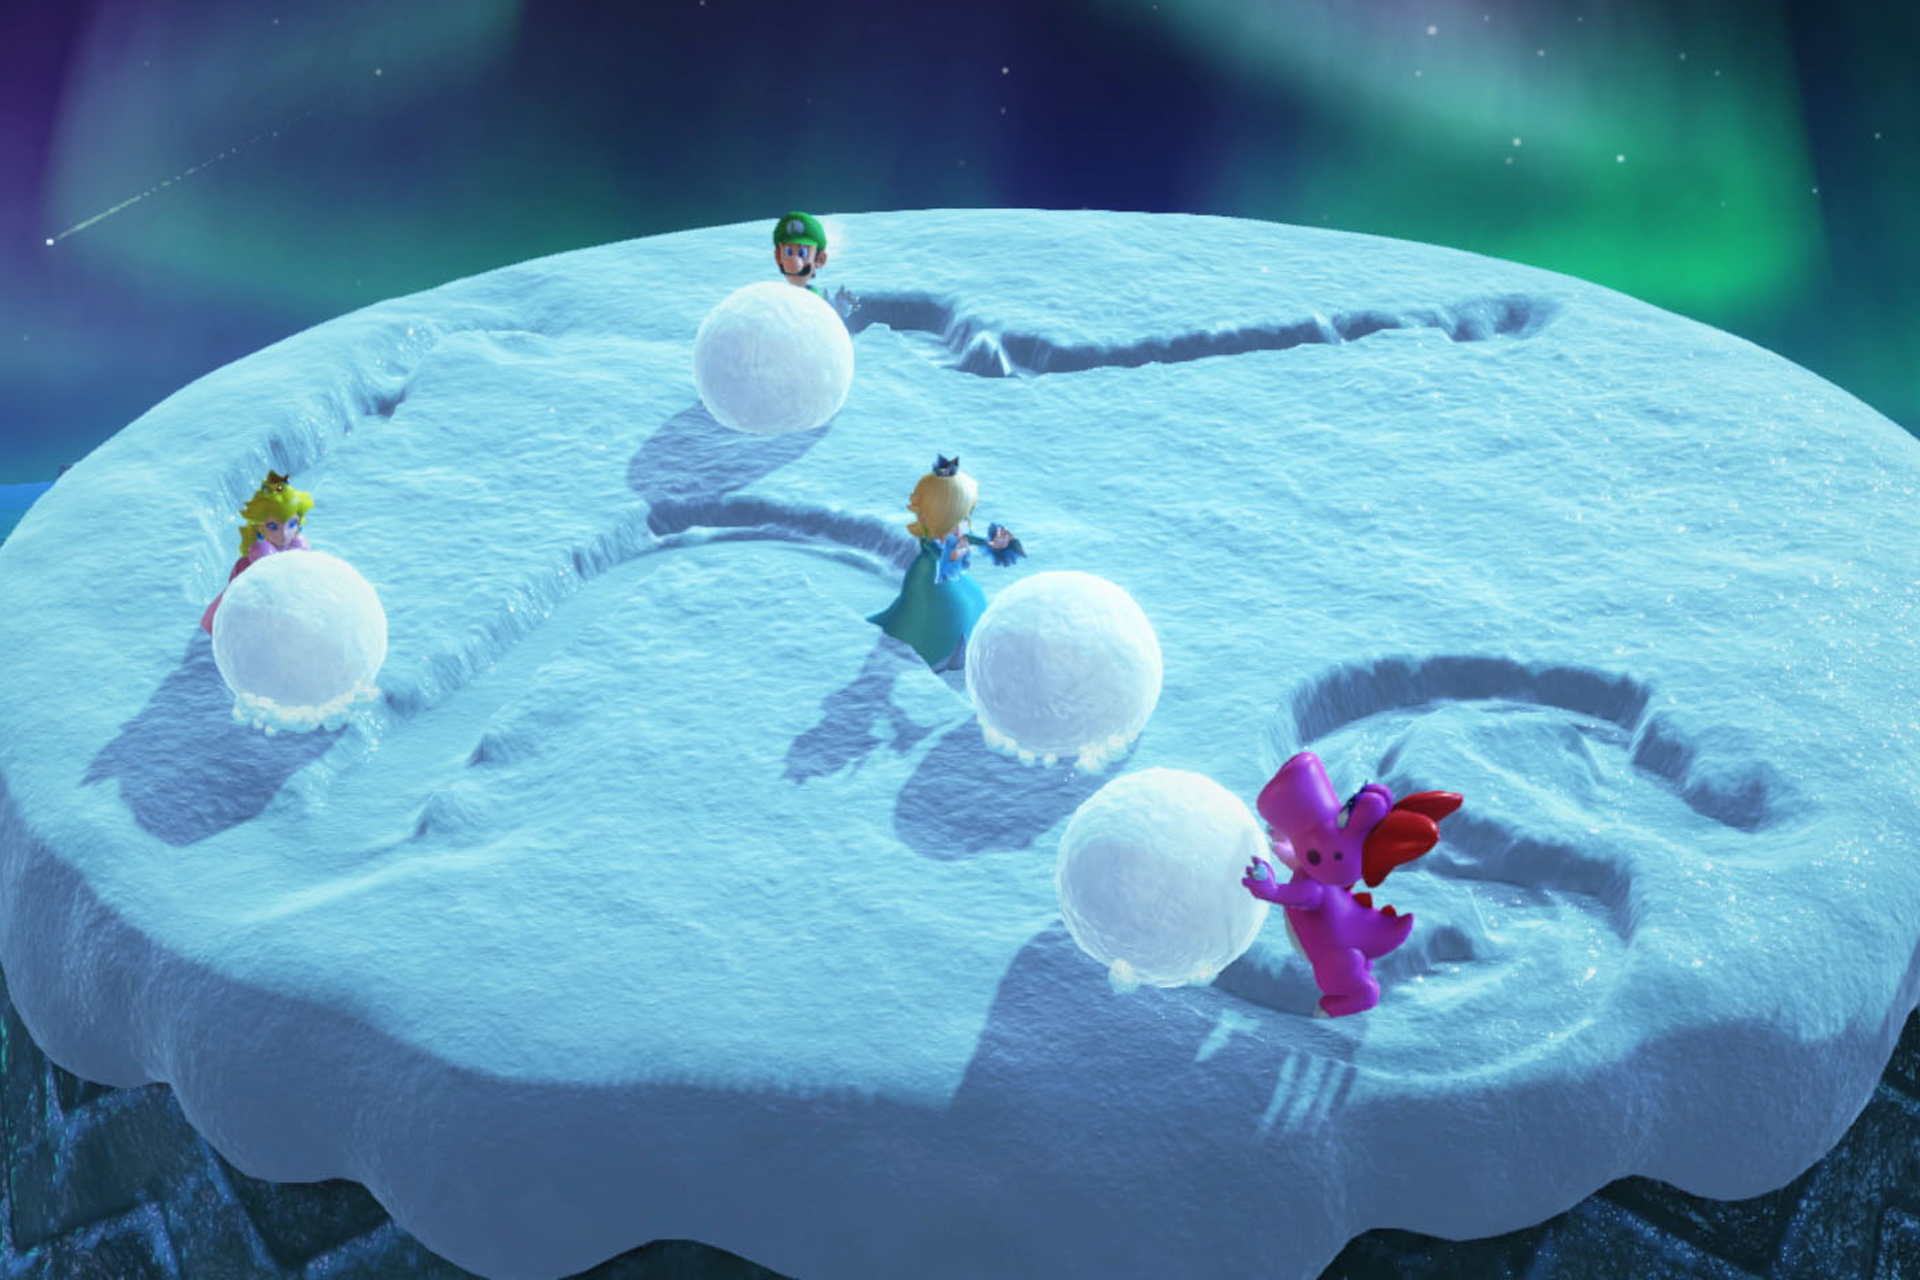 Kleine Schneeballschlacht gefällig? Bild: © Nintendo